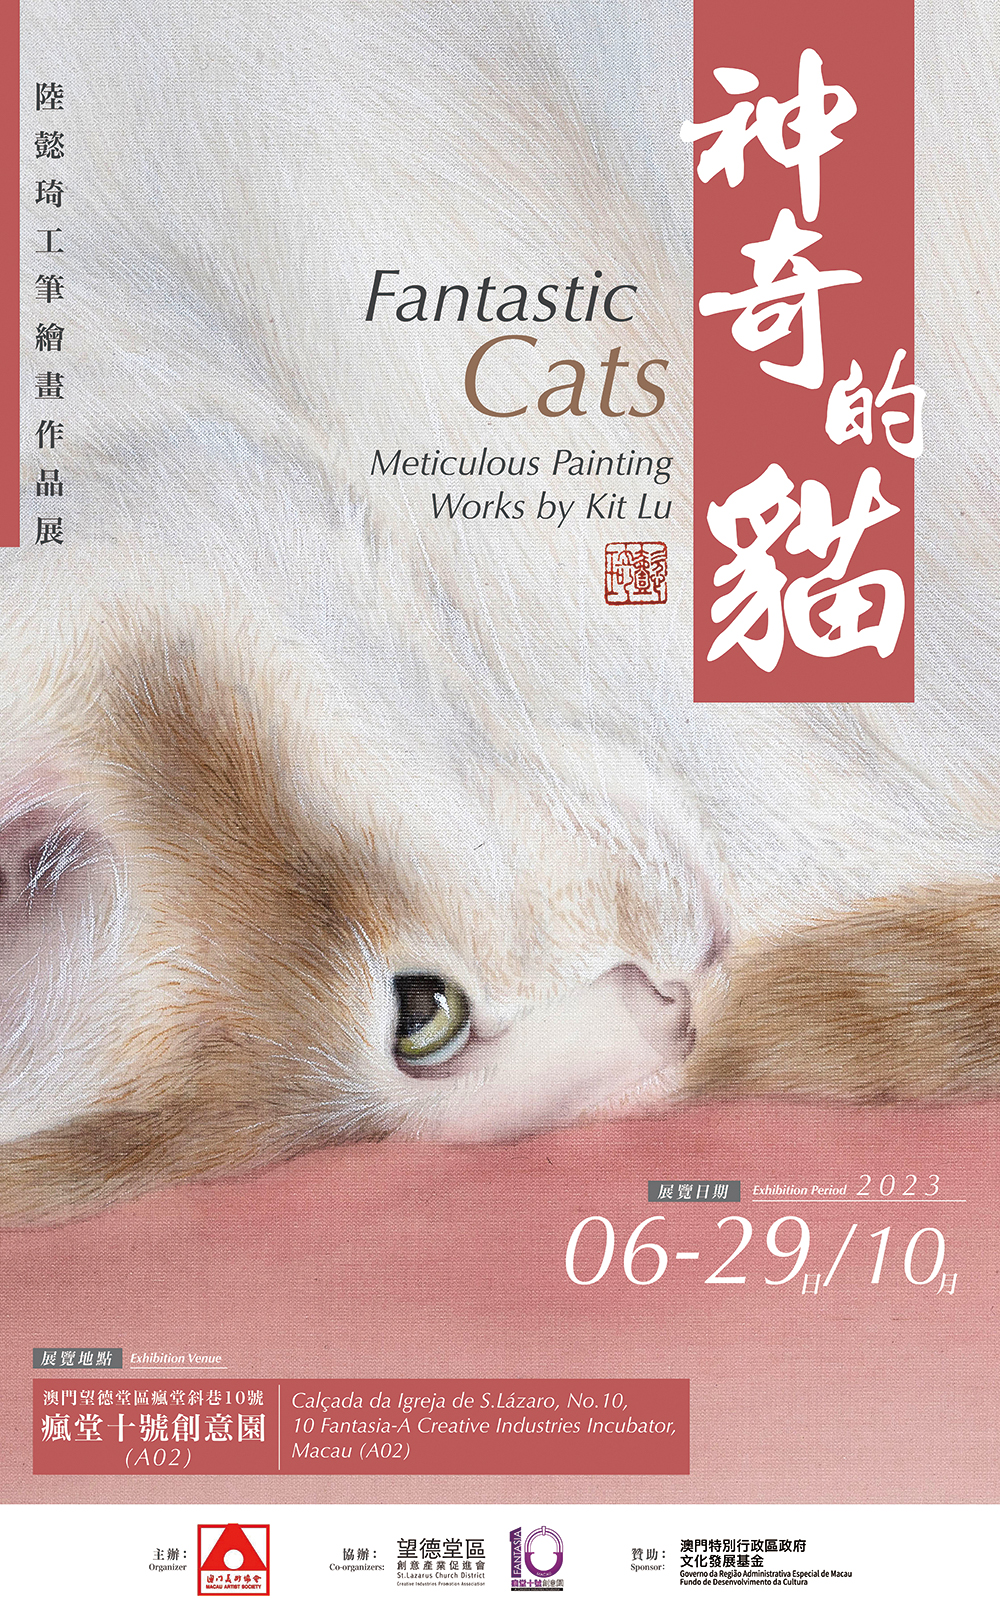 「神奇的貓」陸懿琦工筆繪畫作品展